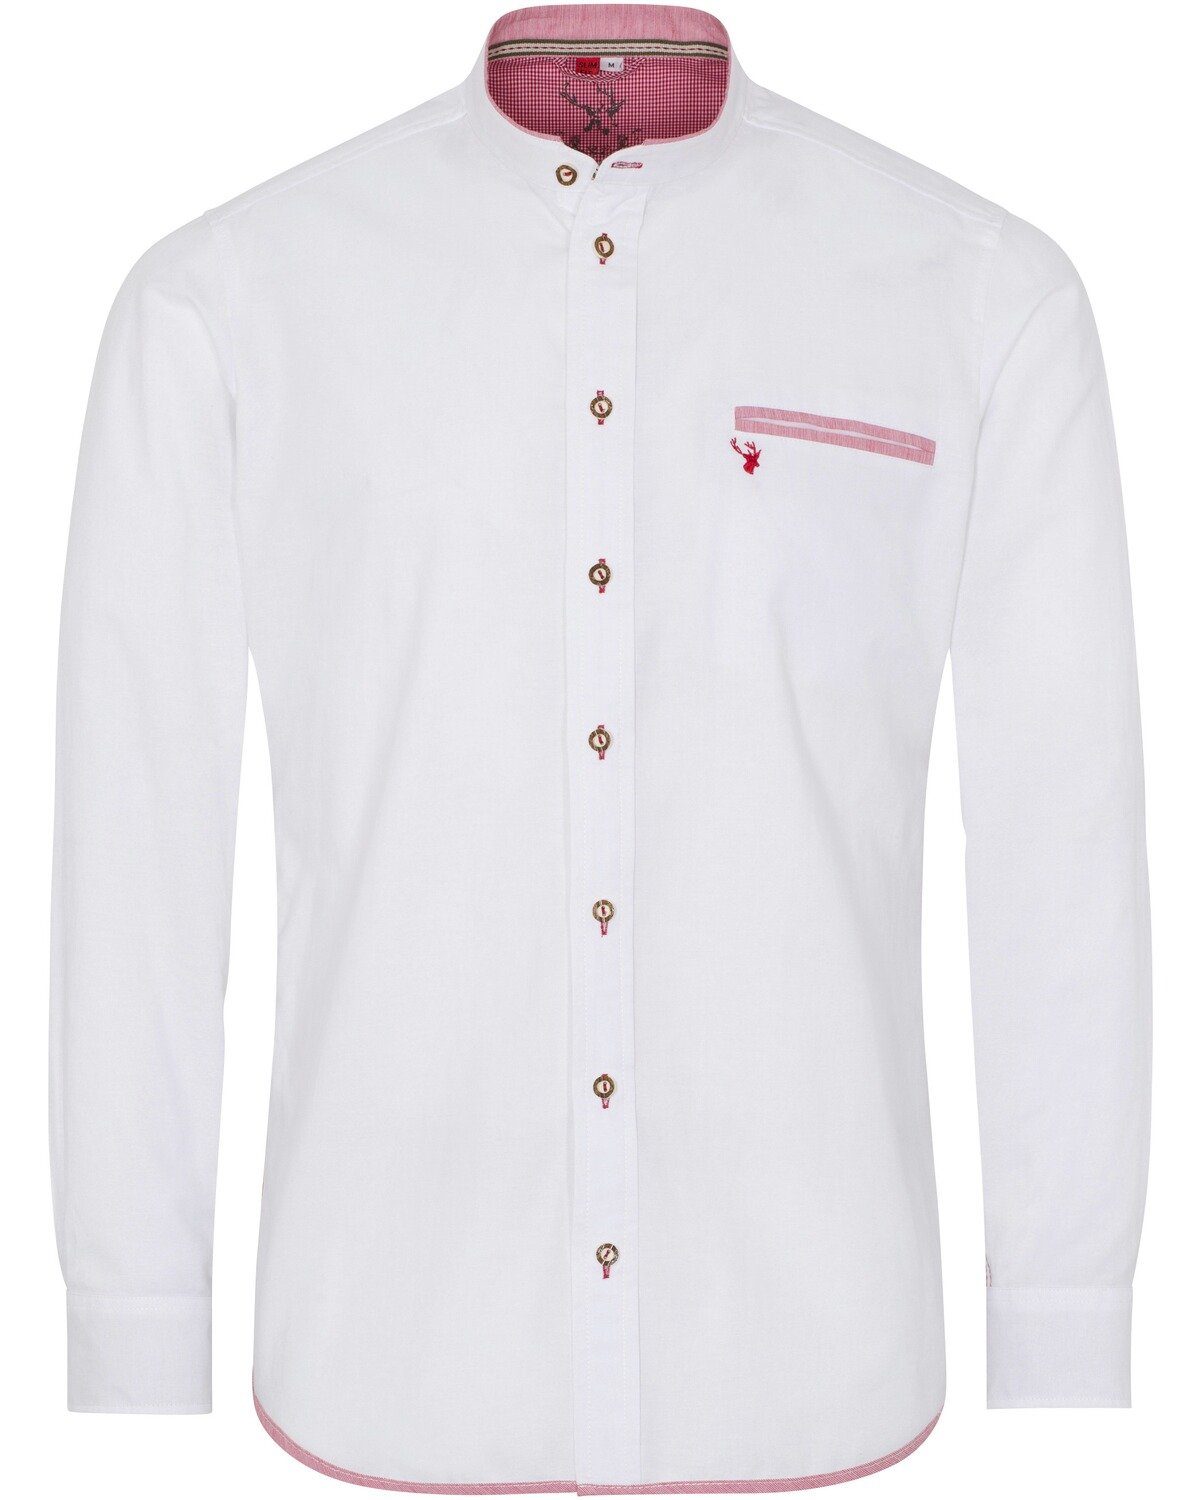 Spieth & Wensky Trachtenhemd Oxfordhemd Nori Slim Fit Weiß/Rot